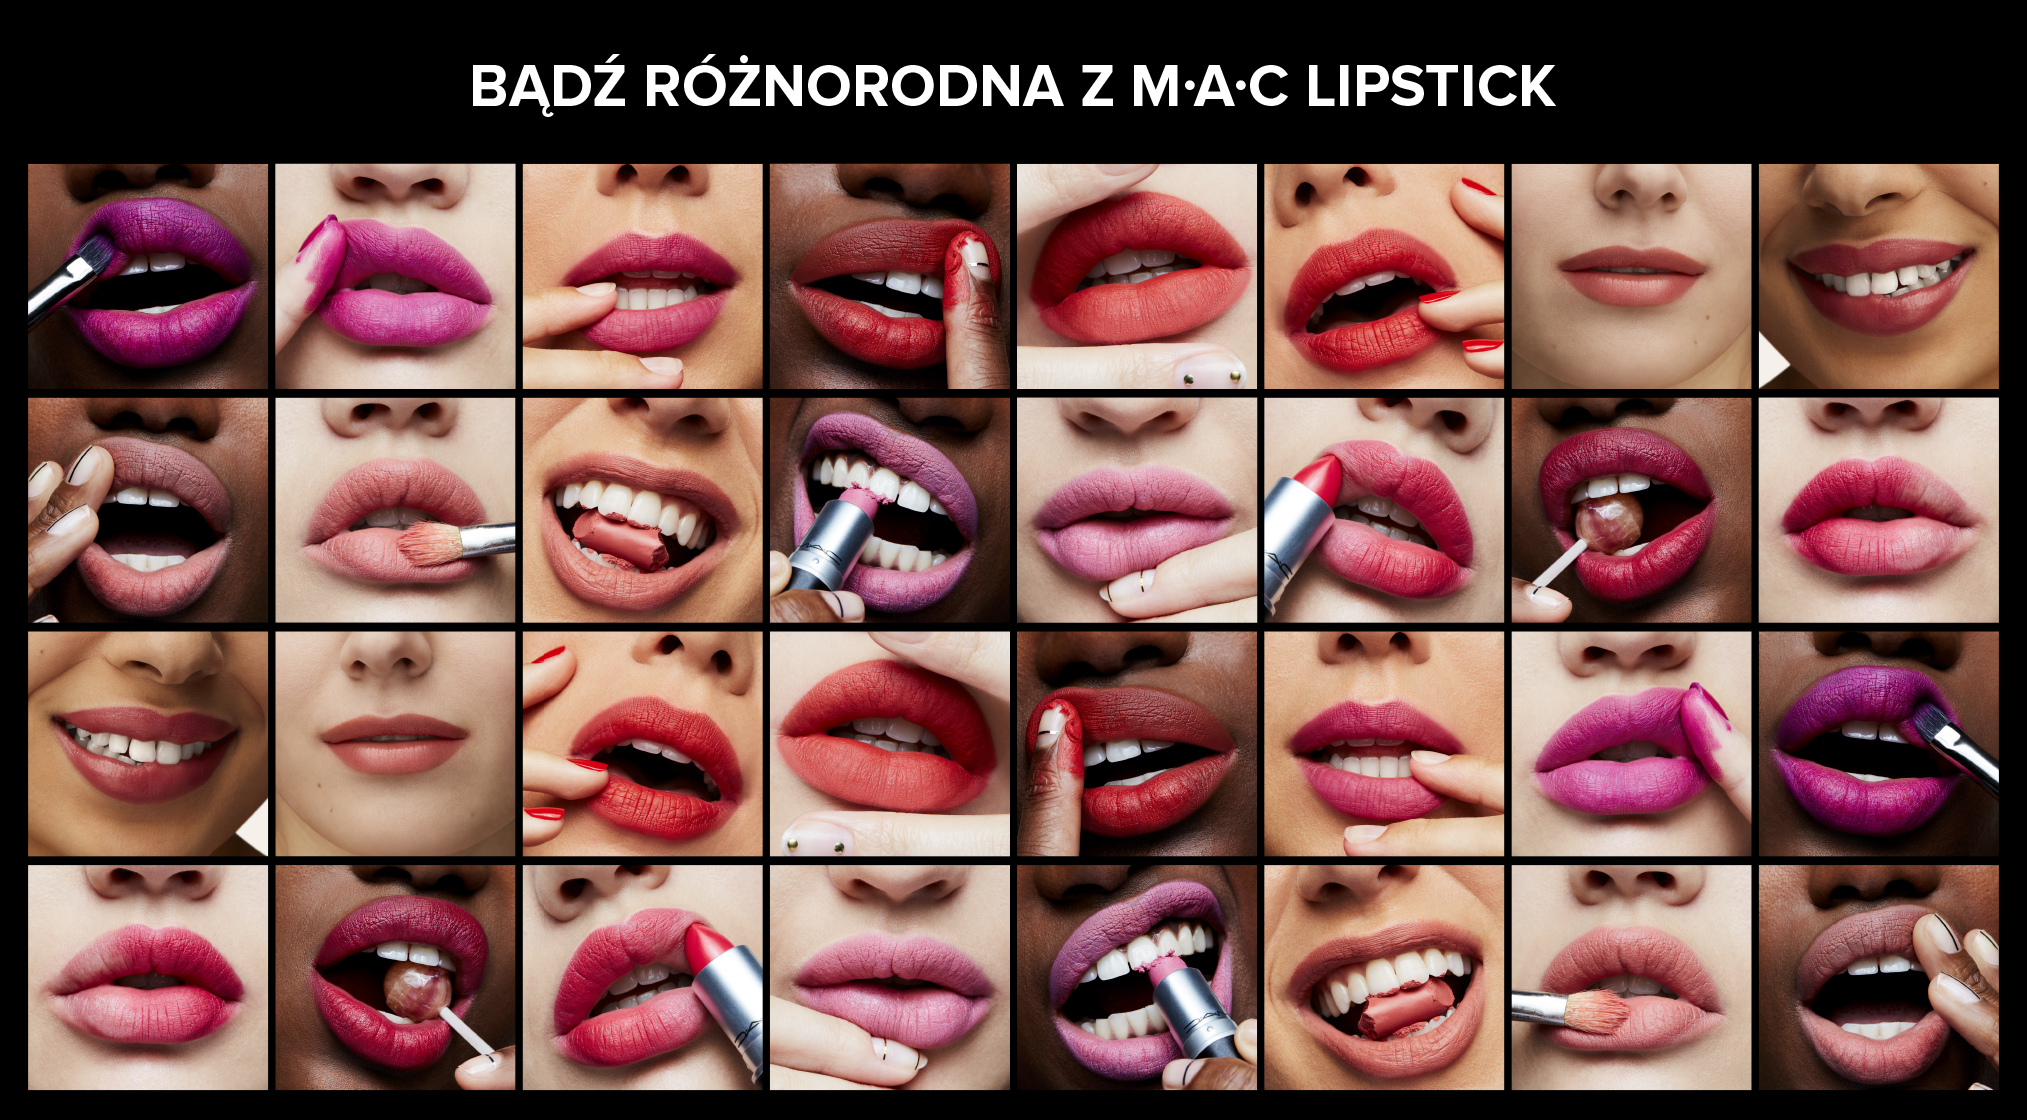 M.A.C Powder Kiss Lipstick